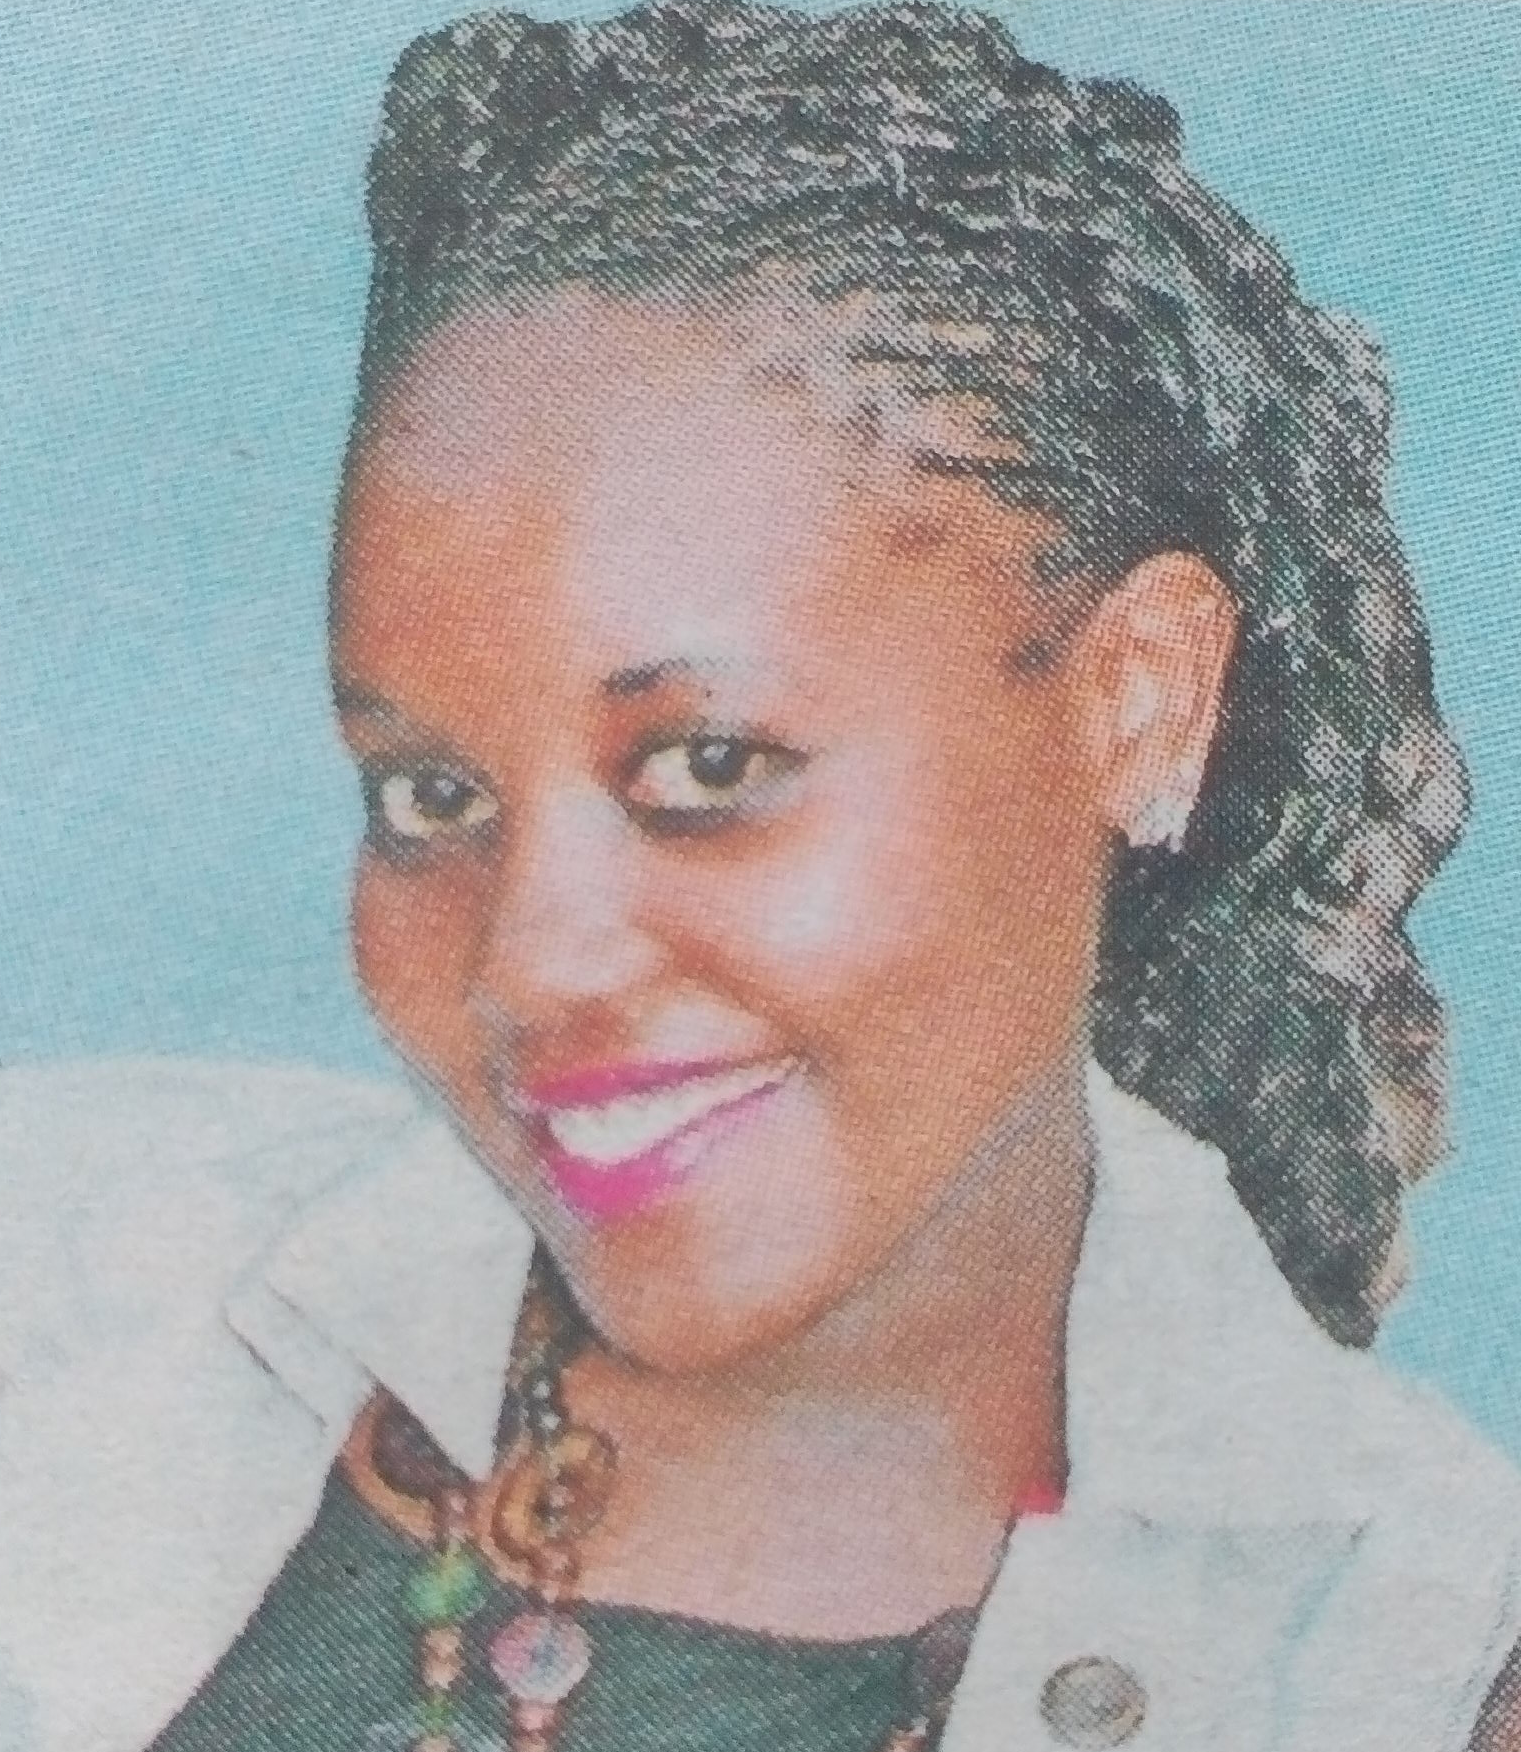 Obituary Image of Mary Wambui Mbuthia